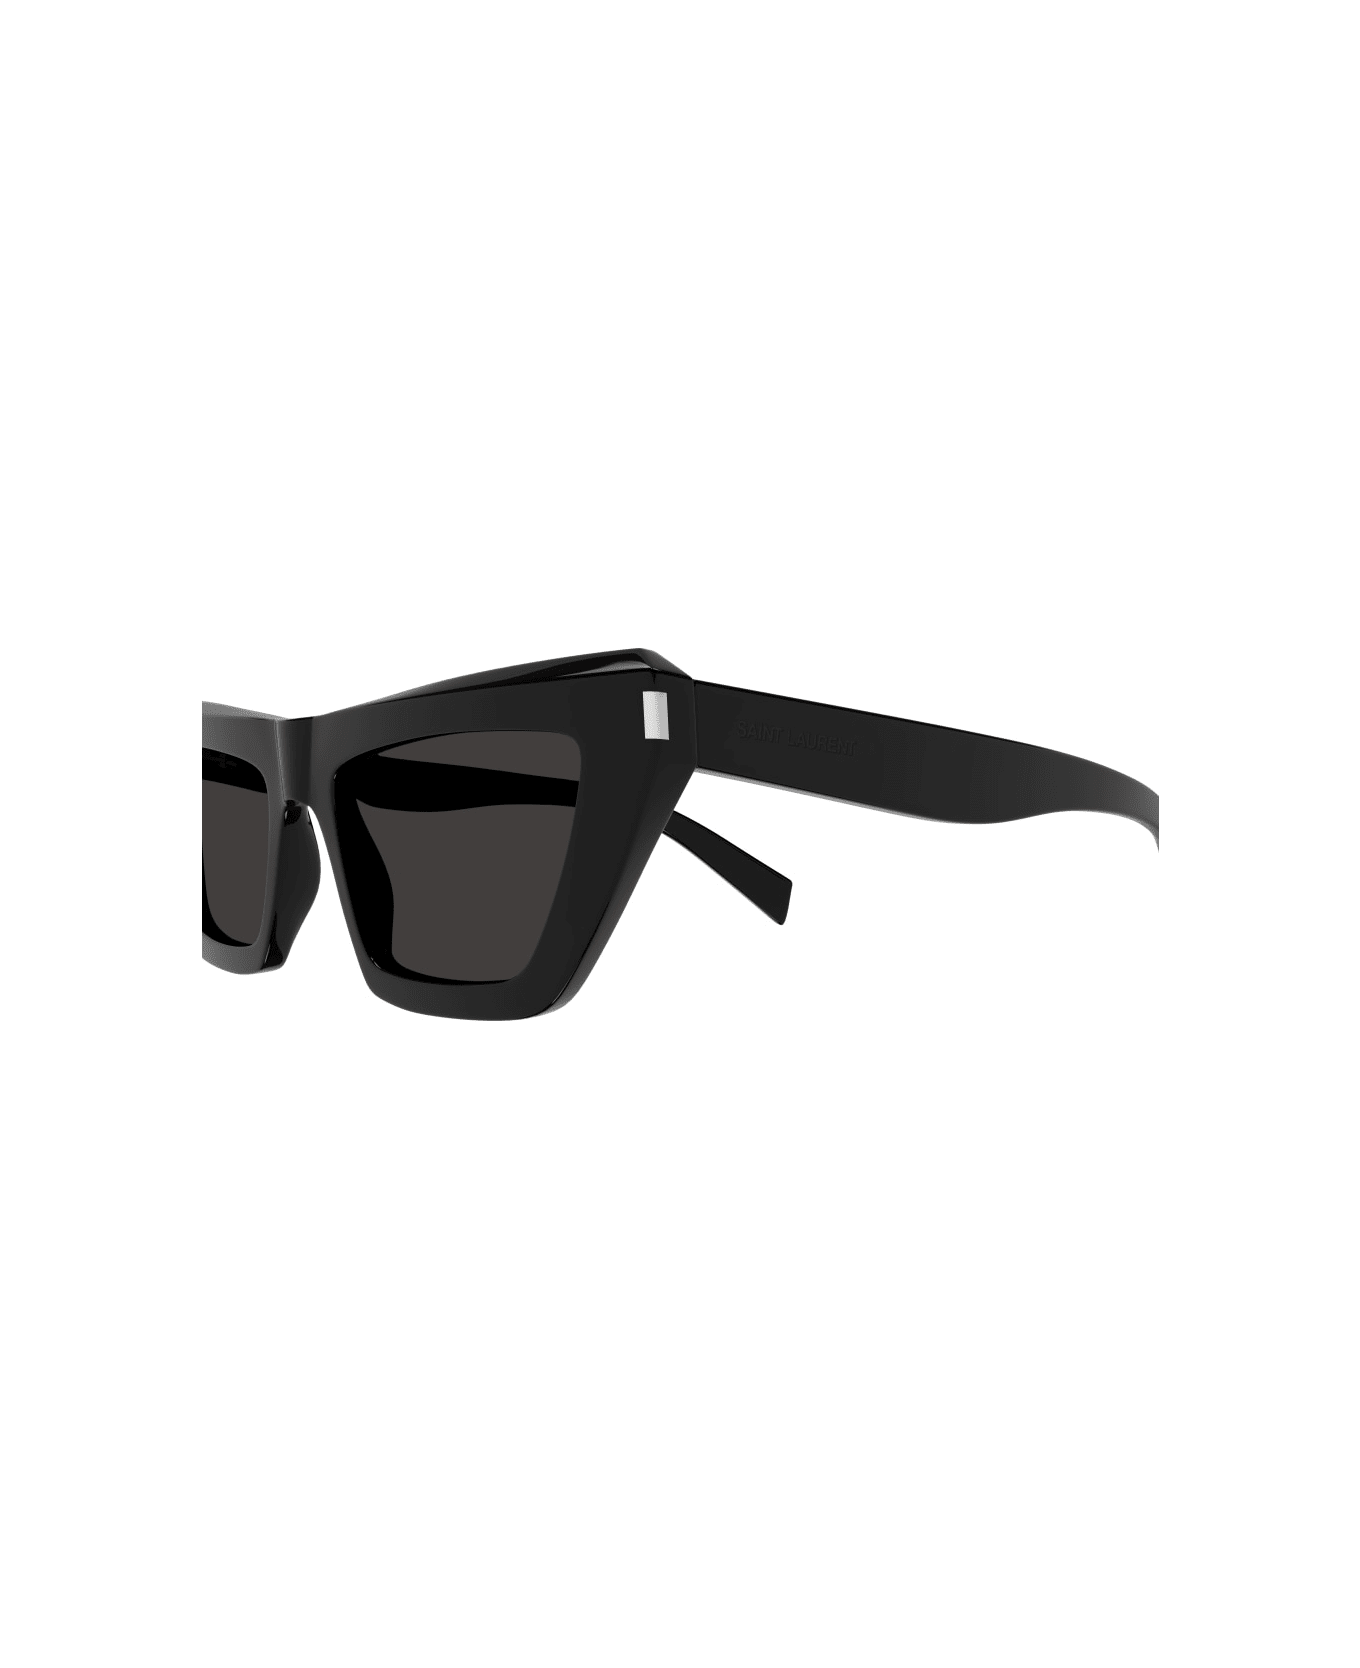 Saint Laurent Eyewear Sl 467 Sunglasses - 001 black black black